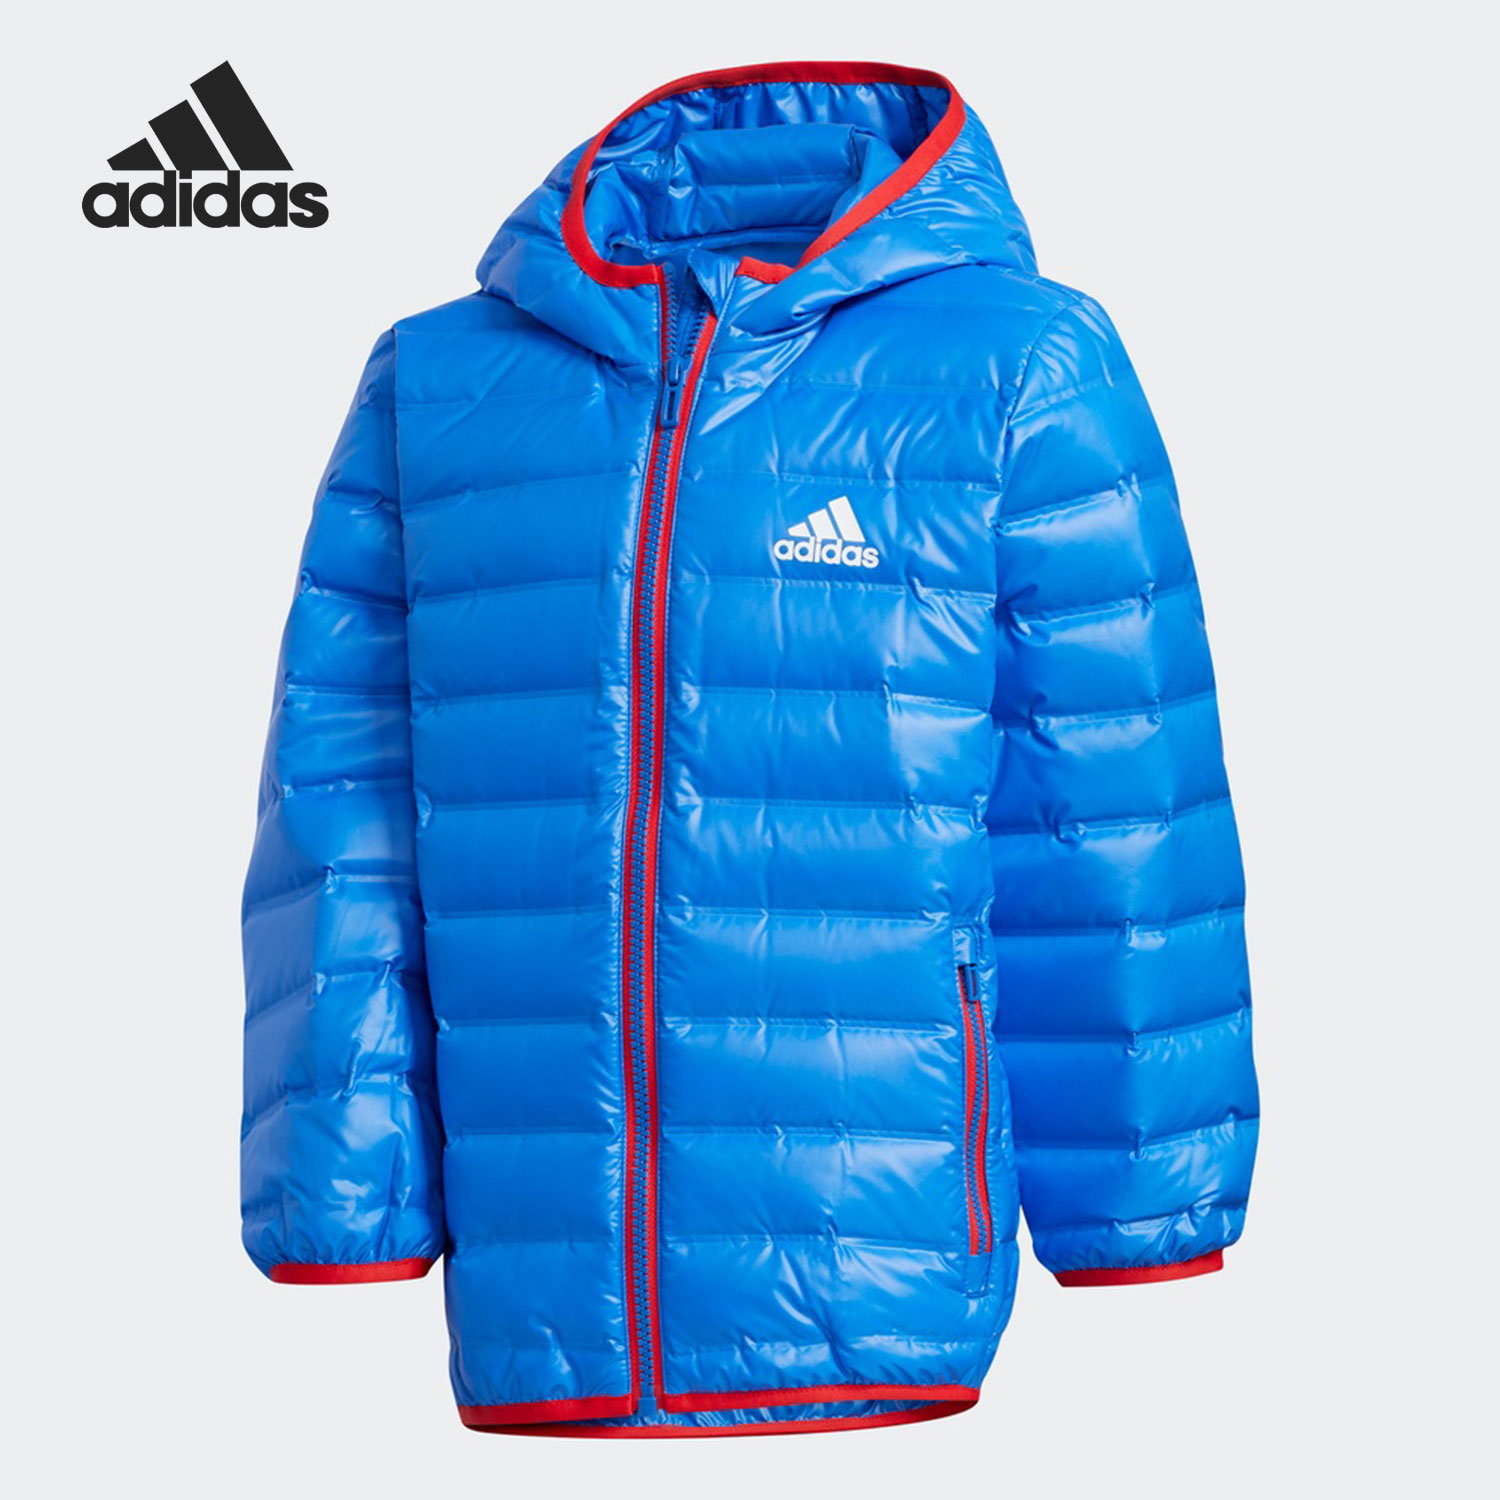 Adidas/阿迪达斯正品冬季新款小童运动休闲保暖羽绒服GC9258